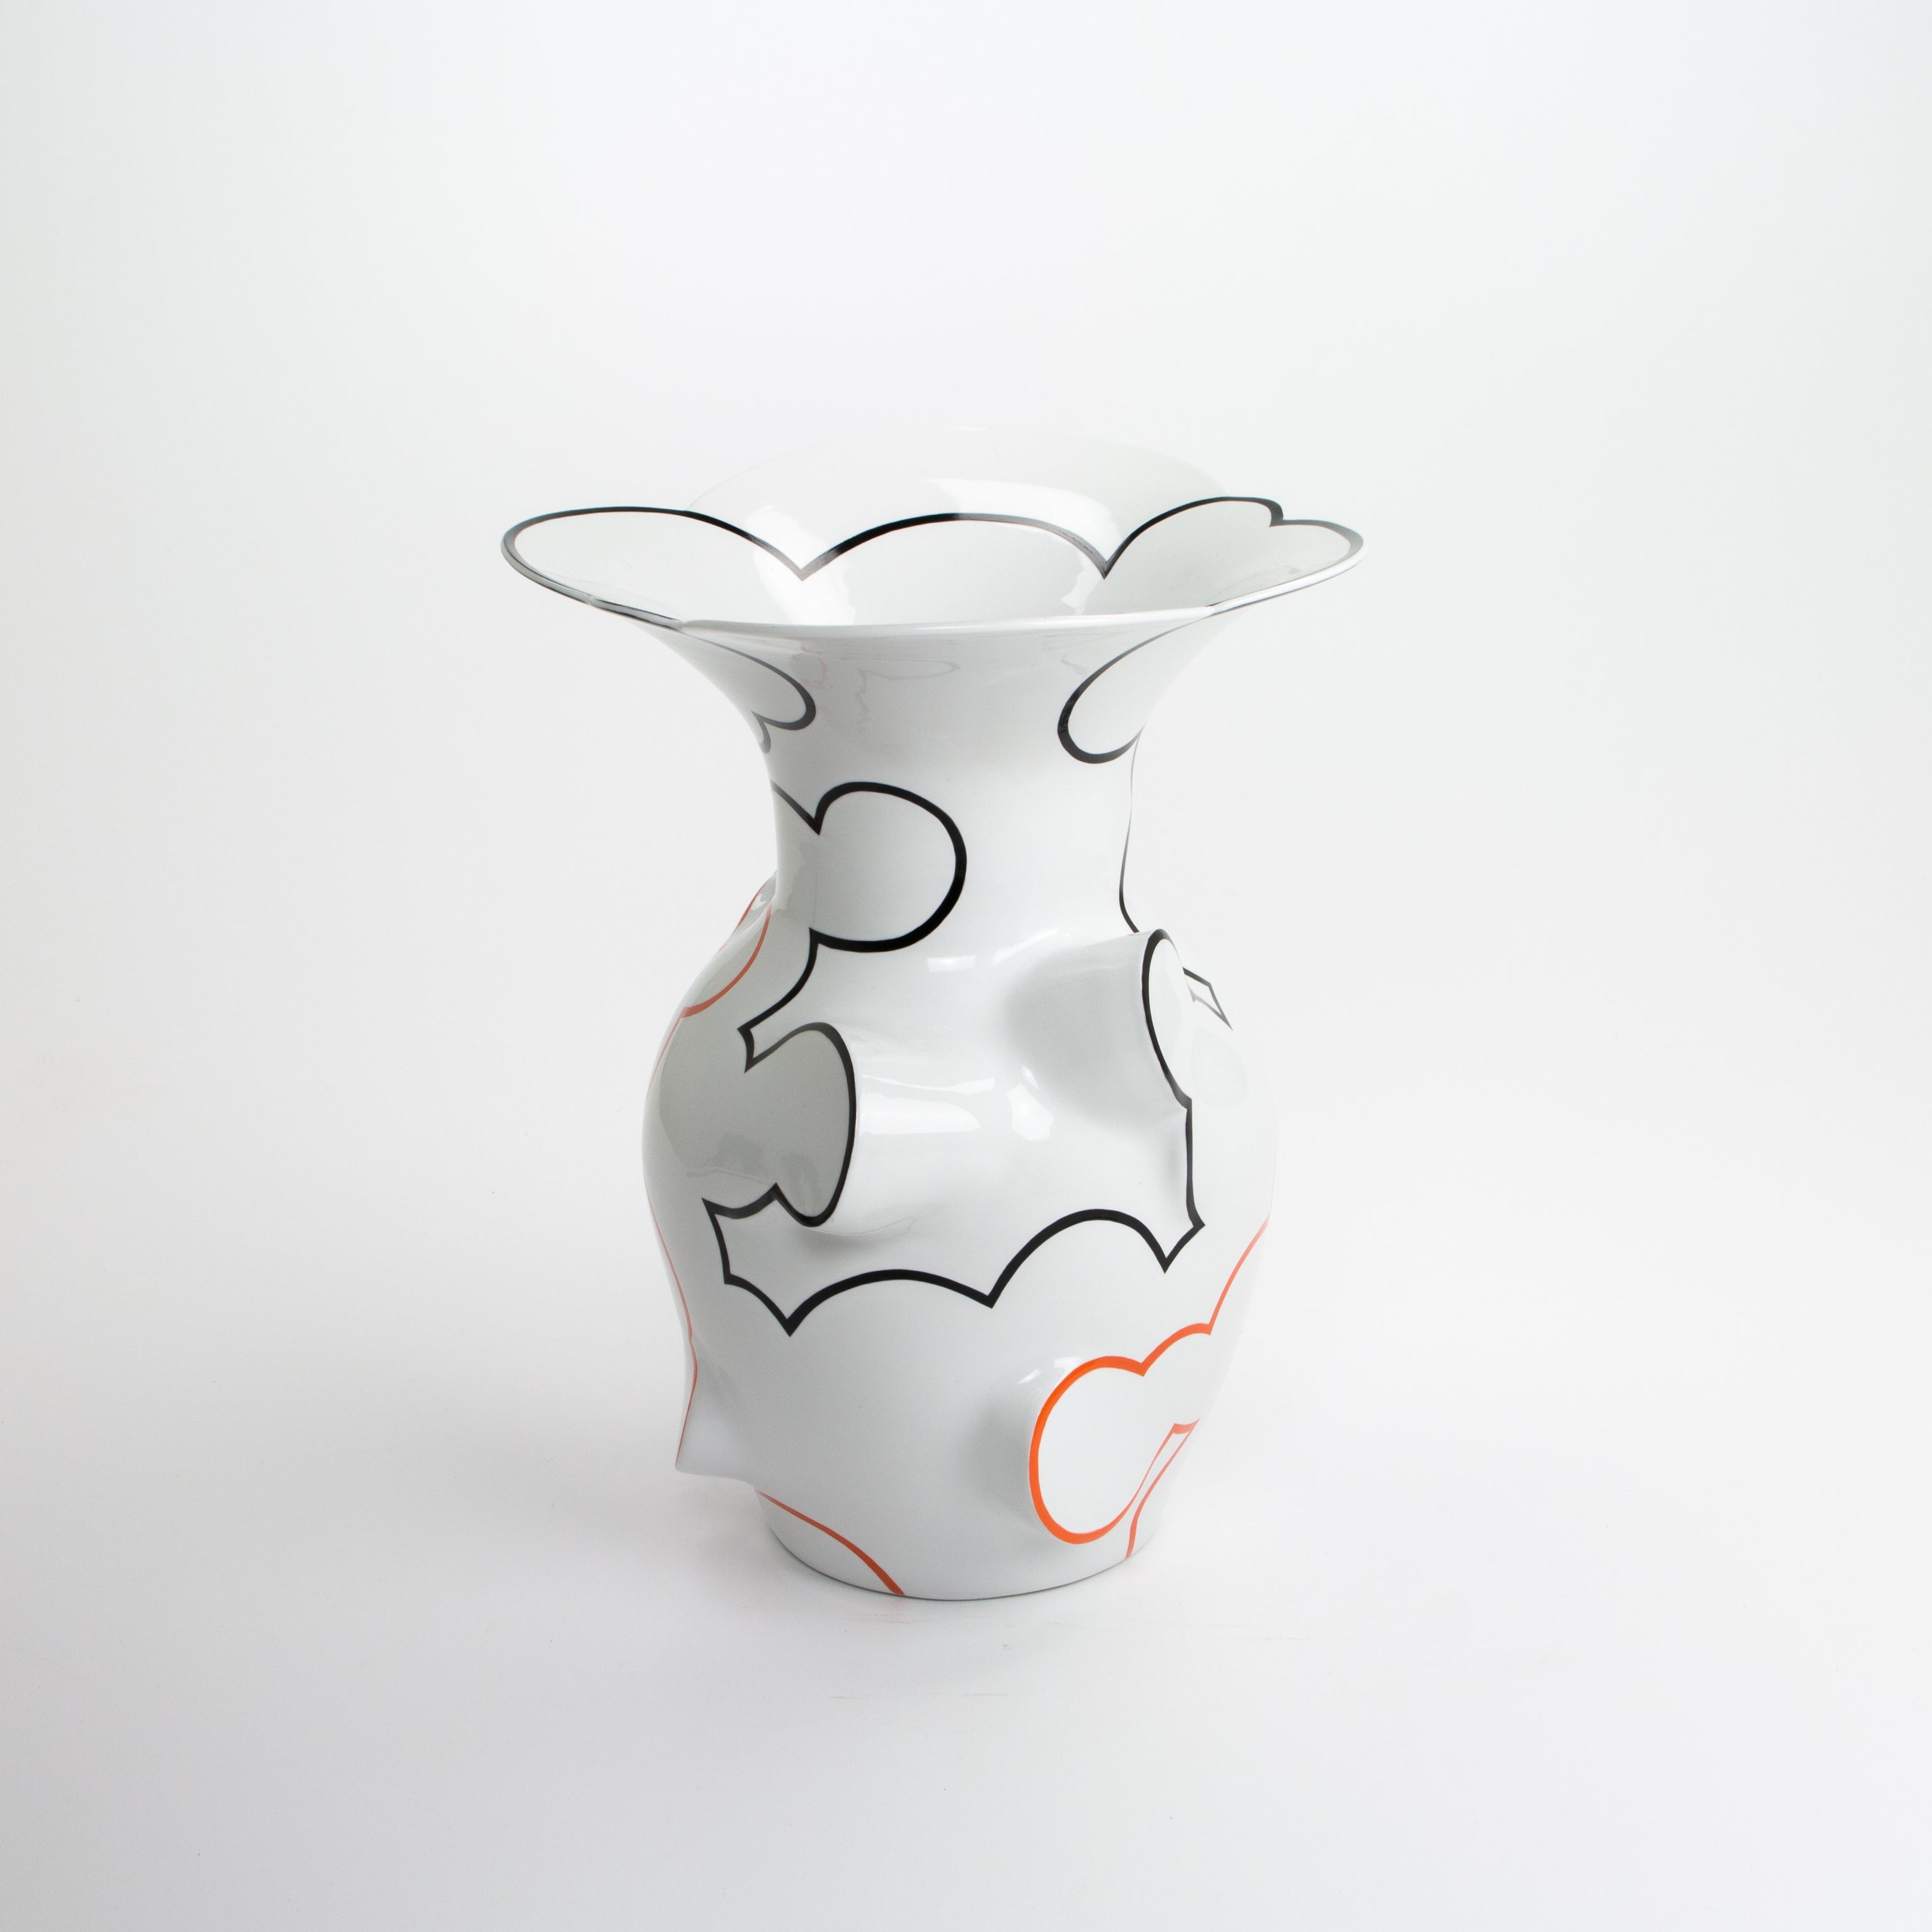 Flared Cloud Vase